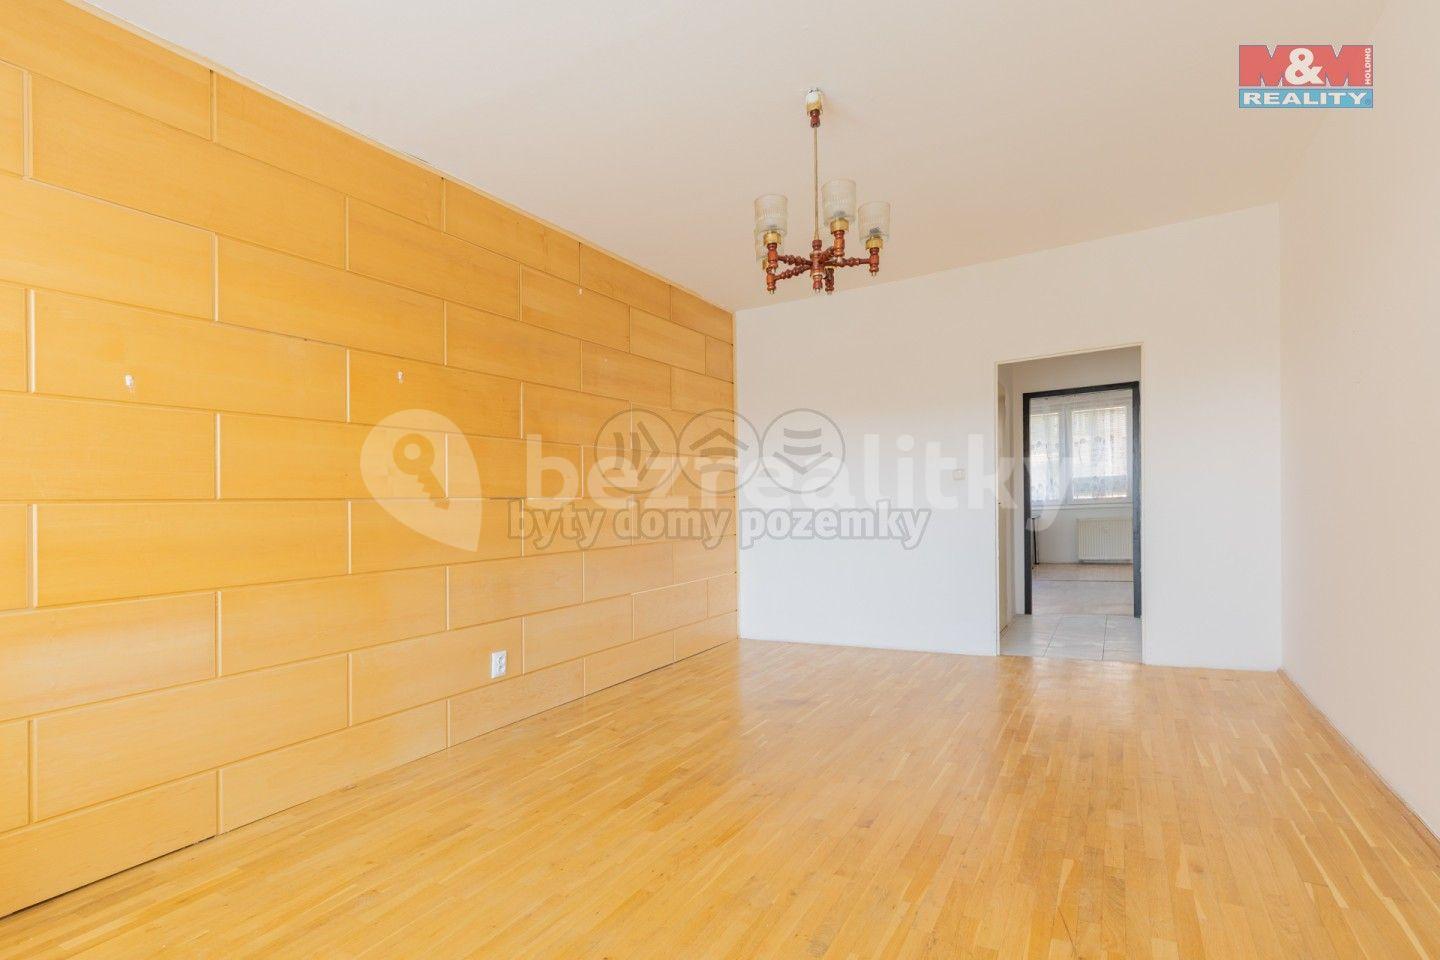 2 bedroom flat for sale, 65 m², Výstavní, Vodňany, Jihočeský Region